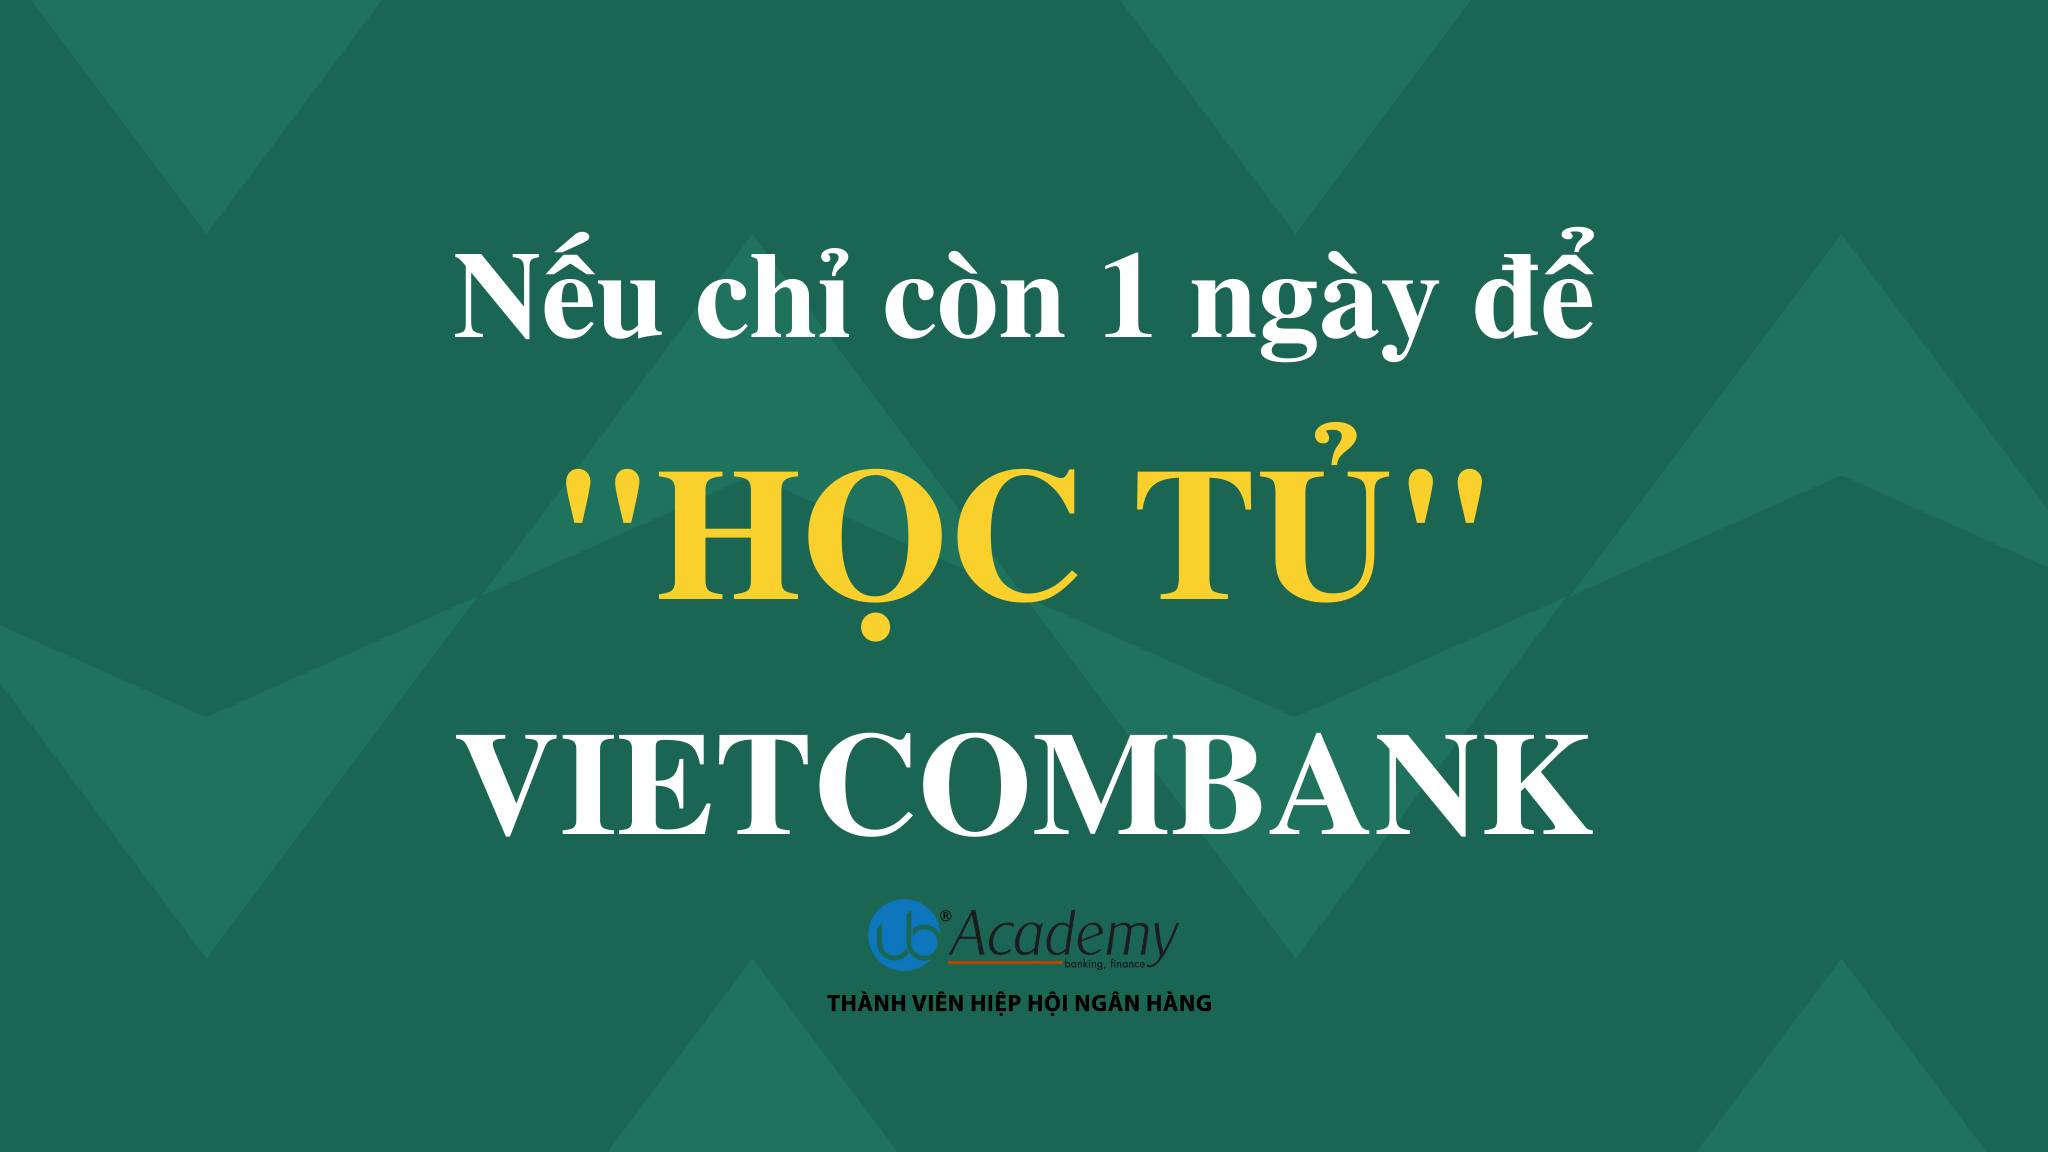 Học tủ Vietcombank - Tổng hợp kiến thức chắc chắn gặp